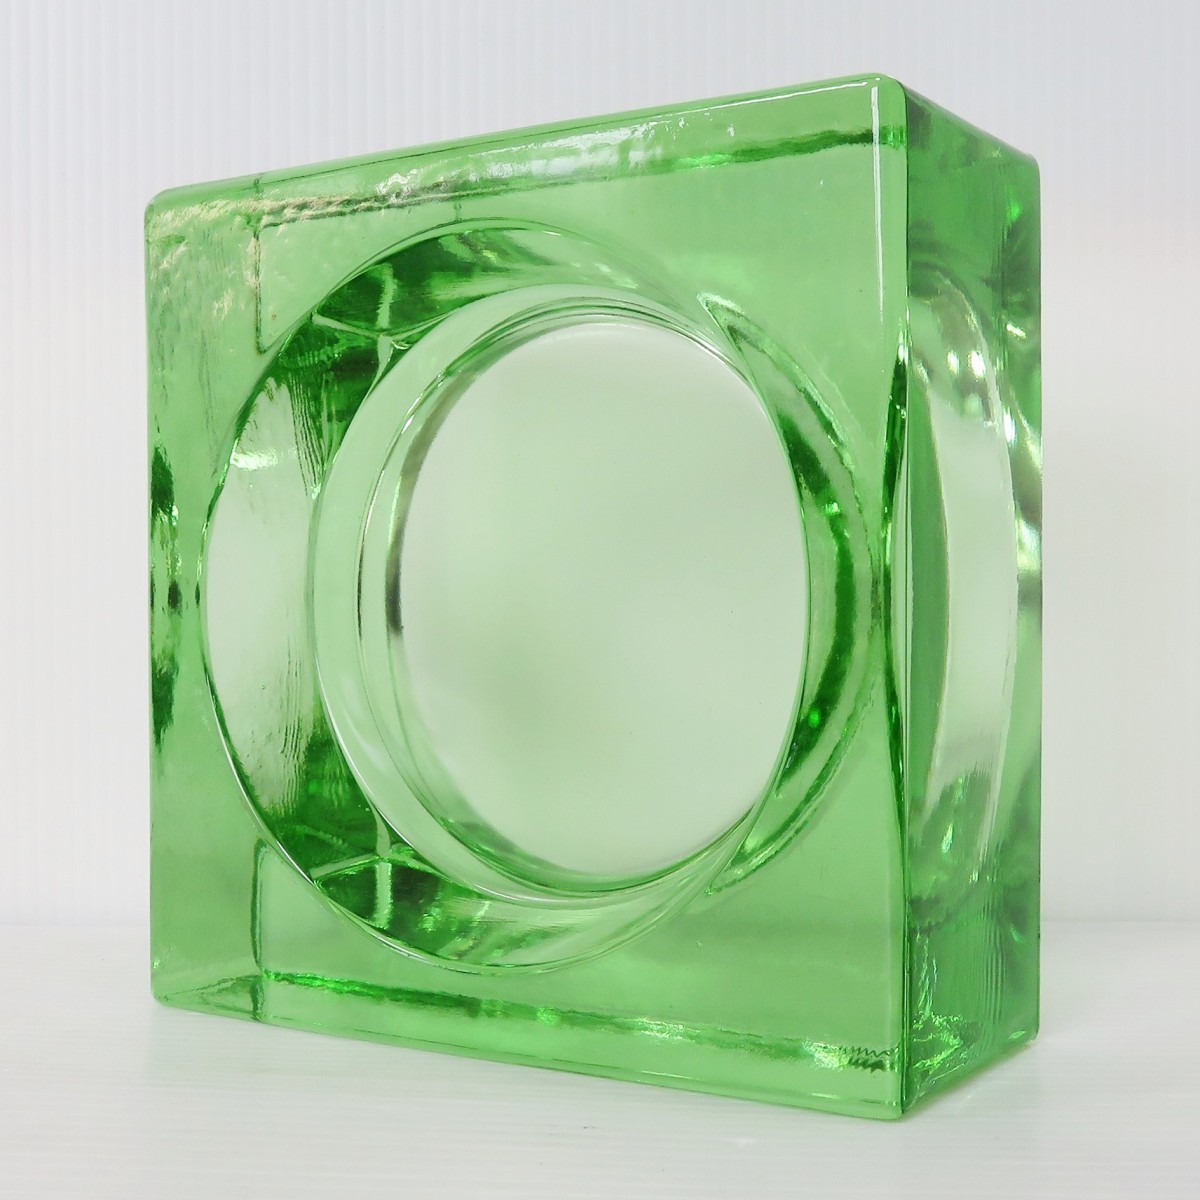 6個セット 送料無料 ガラスブロック 世界で有名なブランド品 厚み60mmライトグリーン色ソリッドgb504